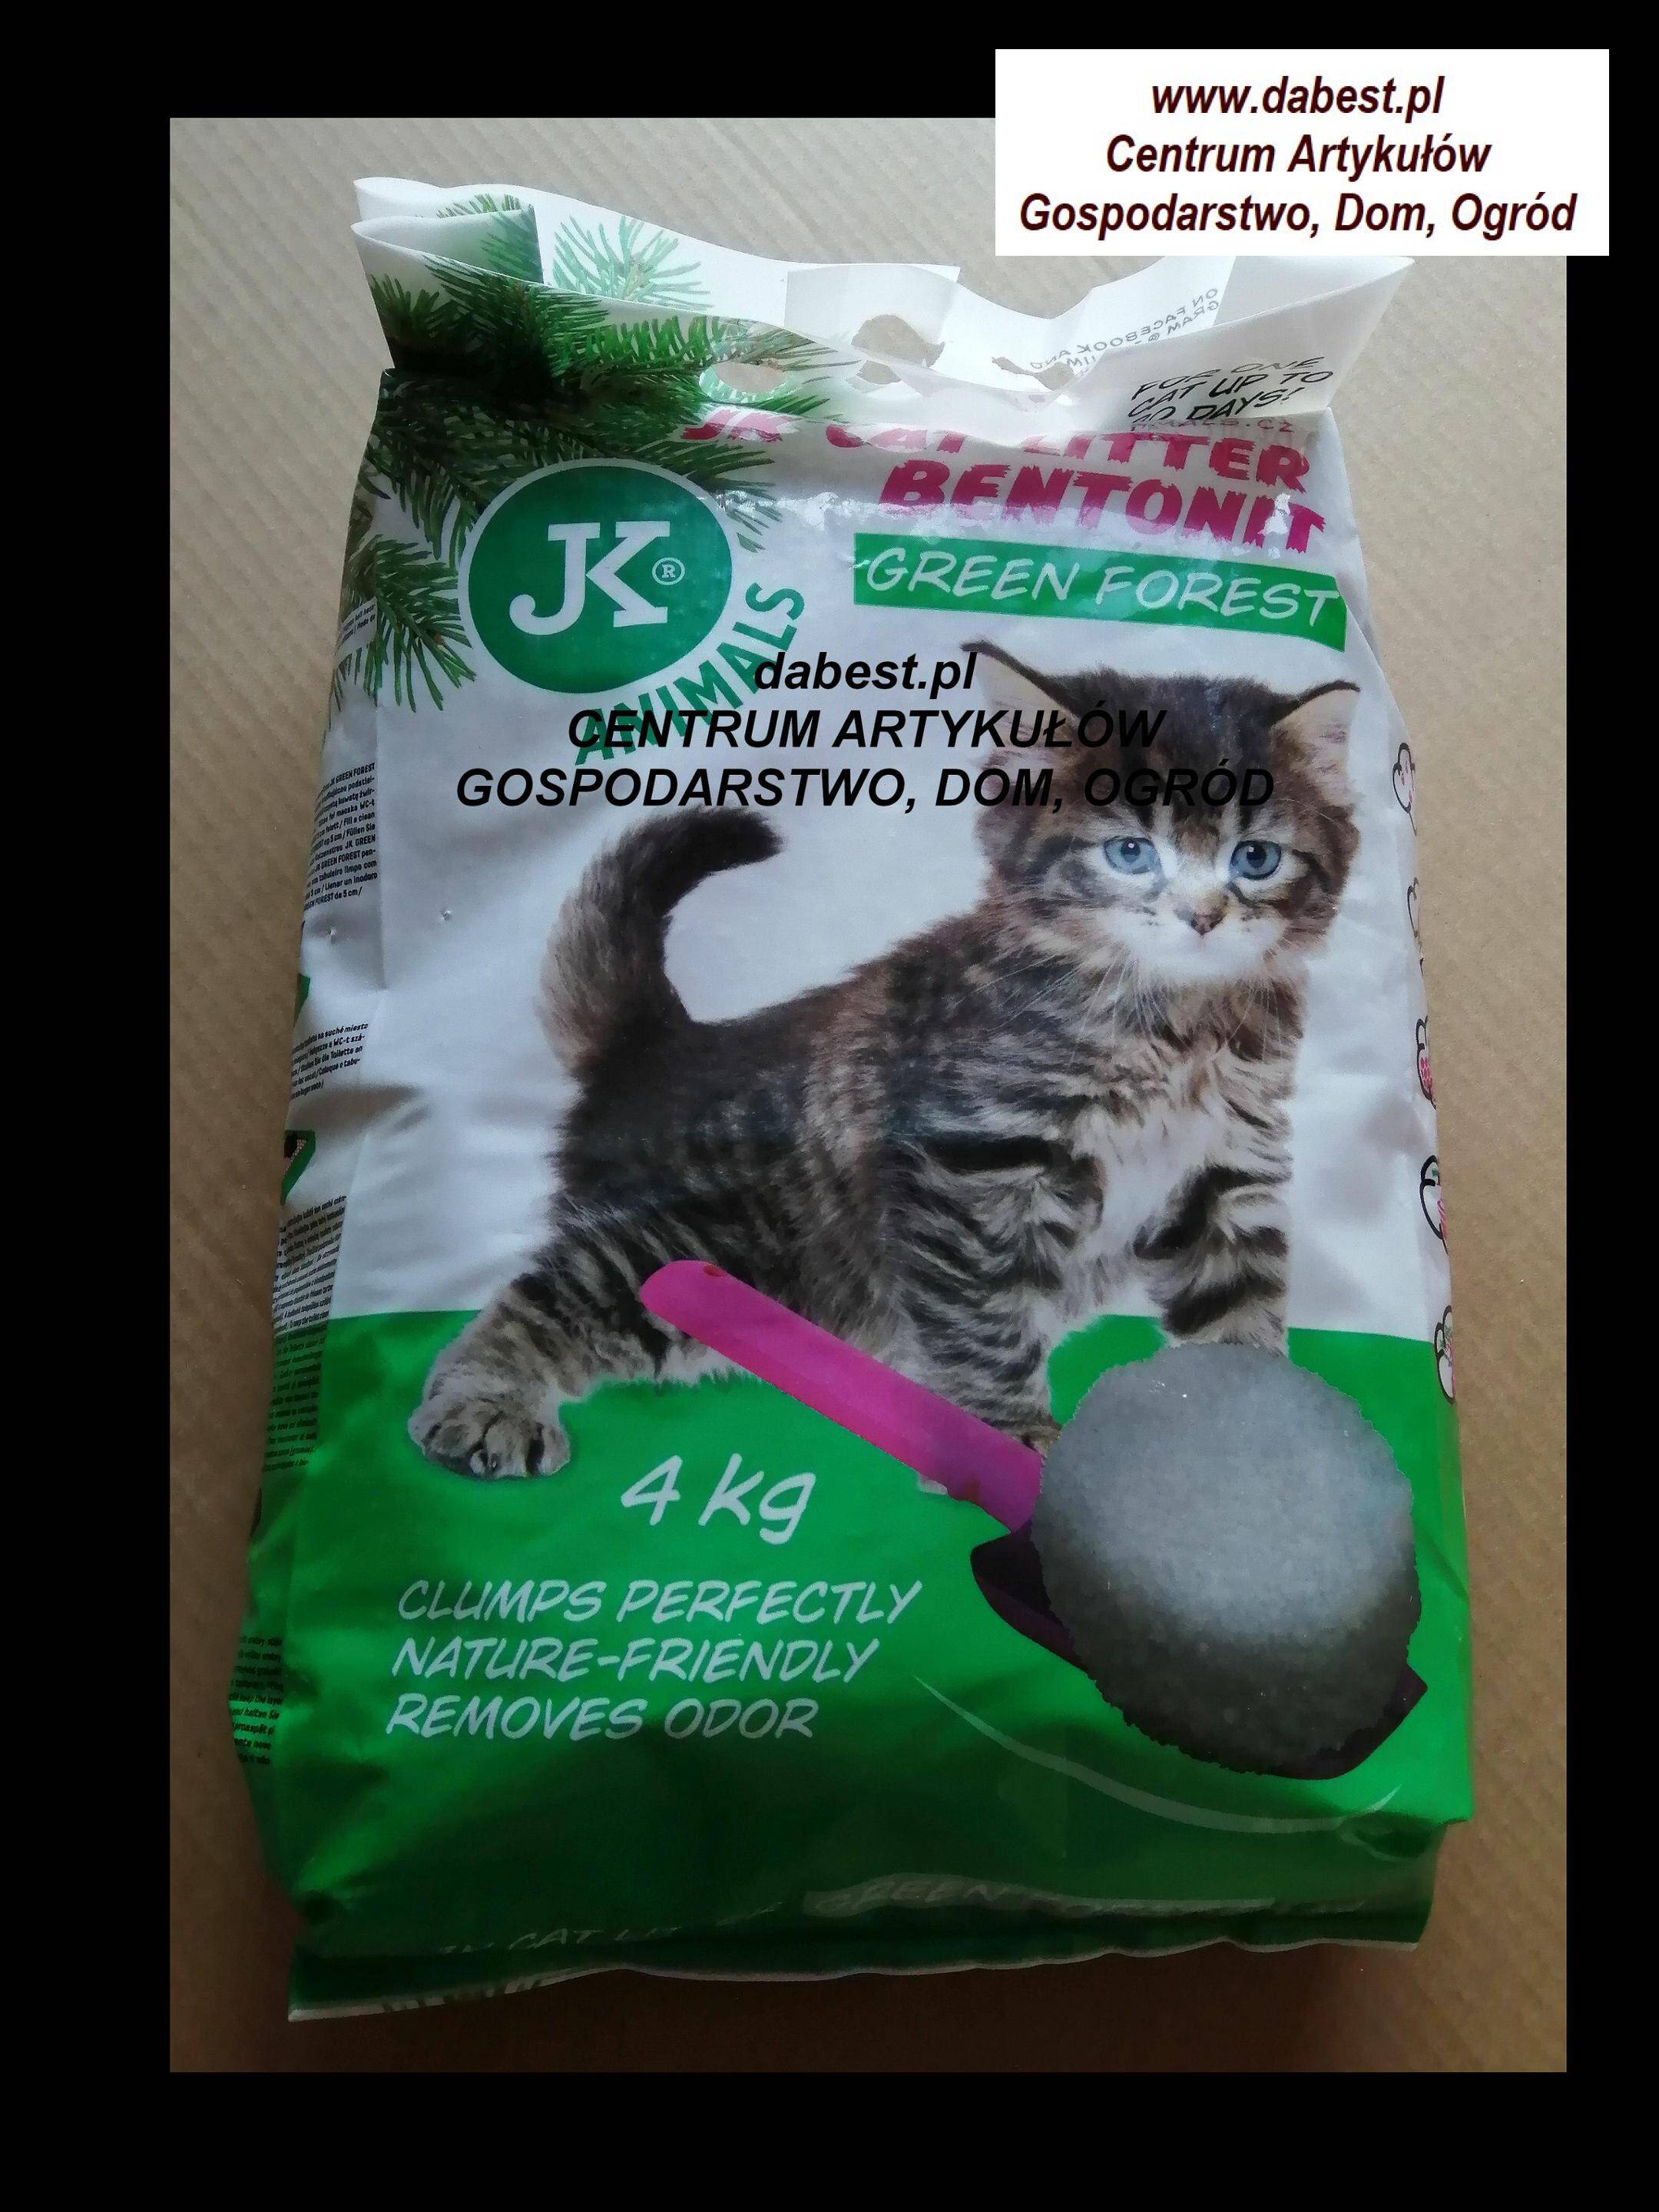 JK-Cat litter zielony las 4kg żwirek/kot